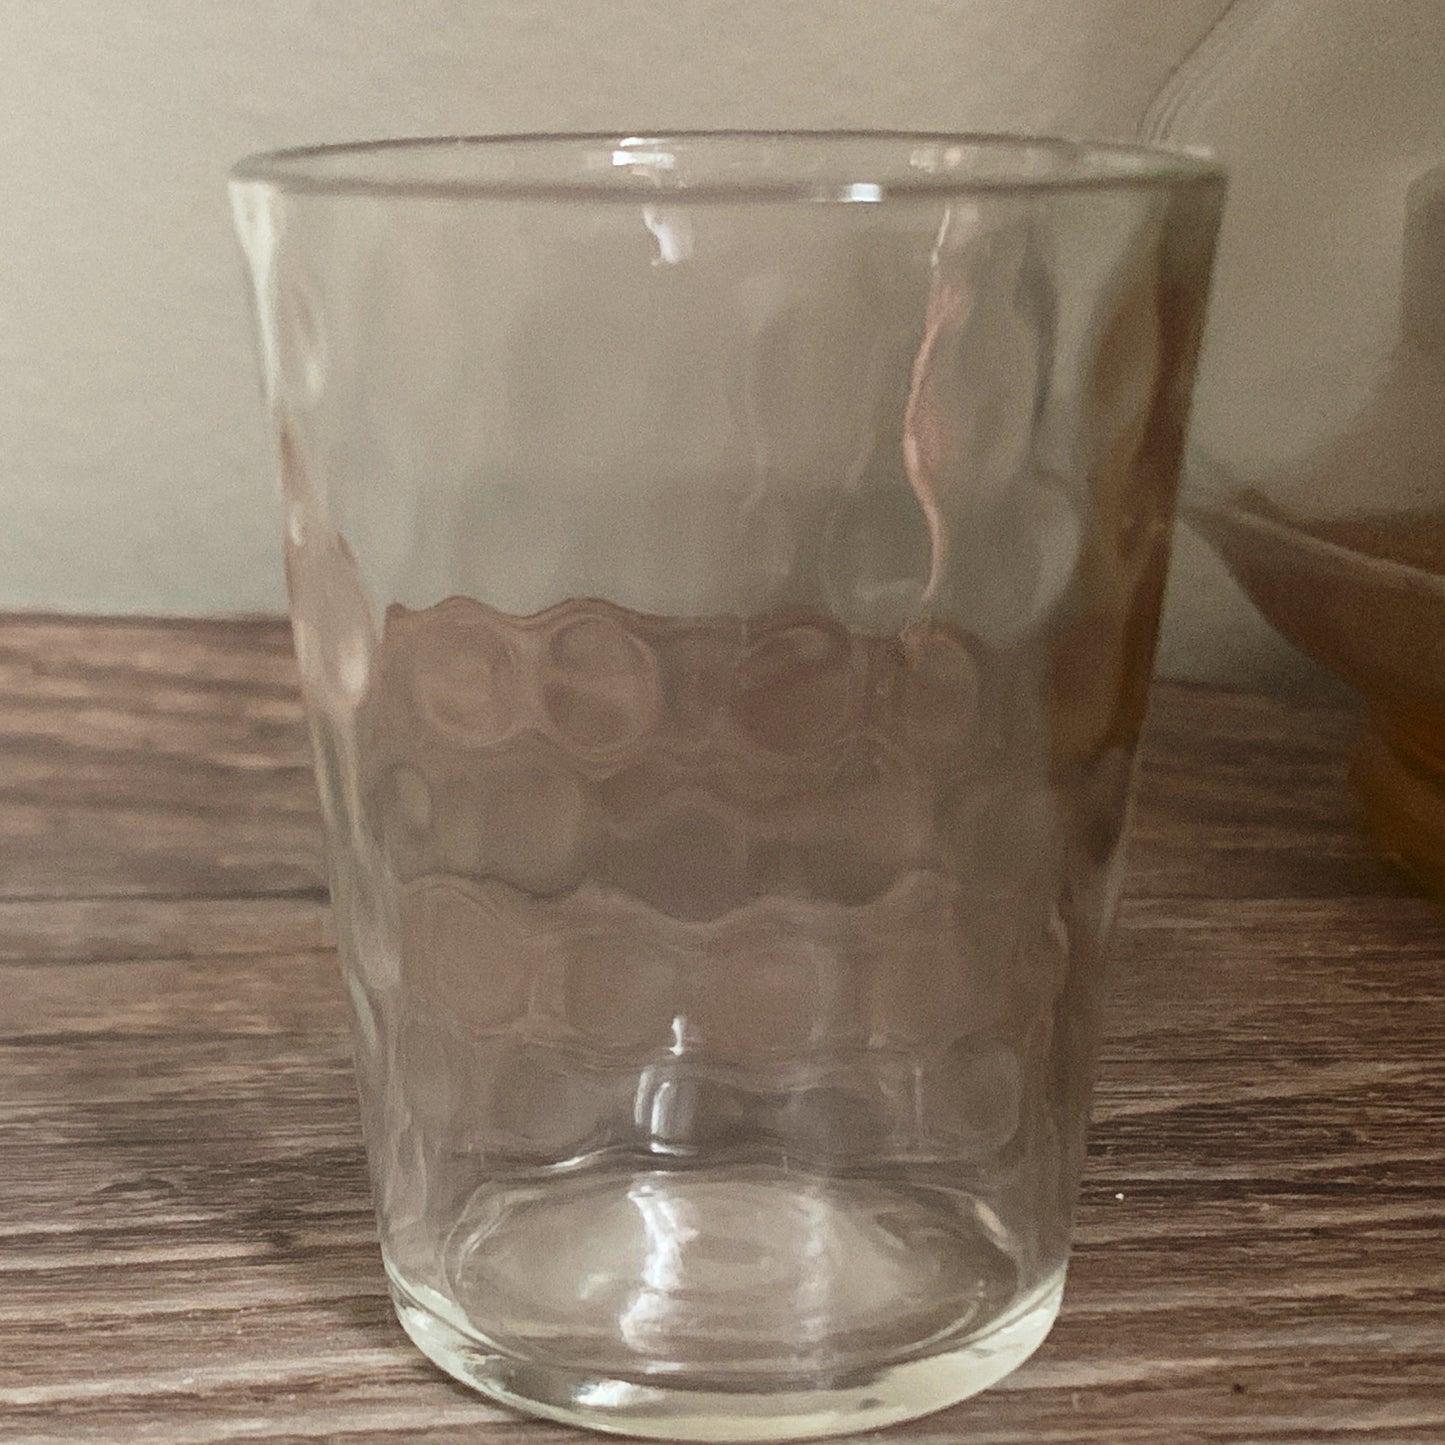 Set of 3 Coin Dot Shot Glasses, Vintage Clear Glass Shot Glasses